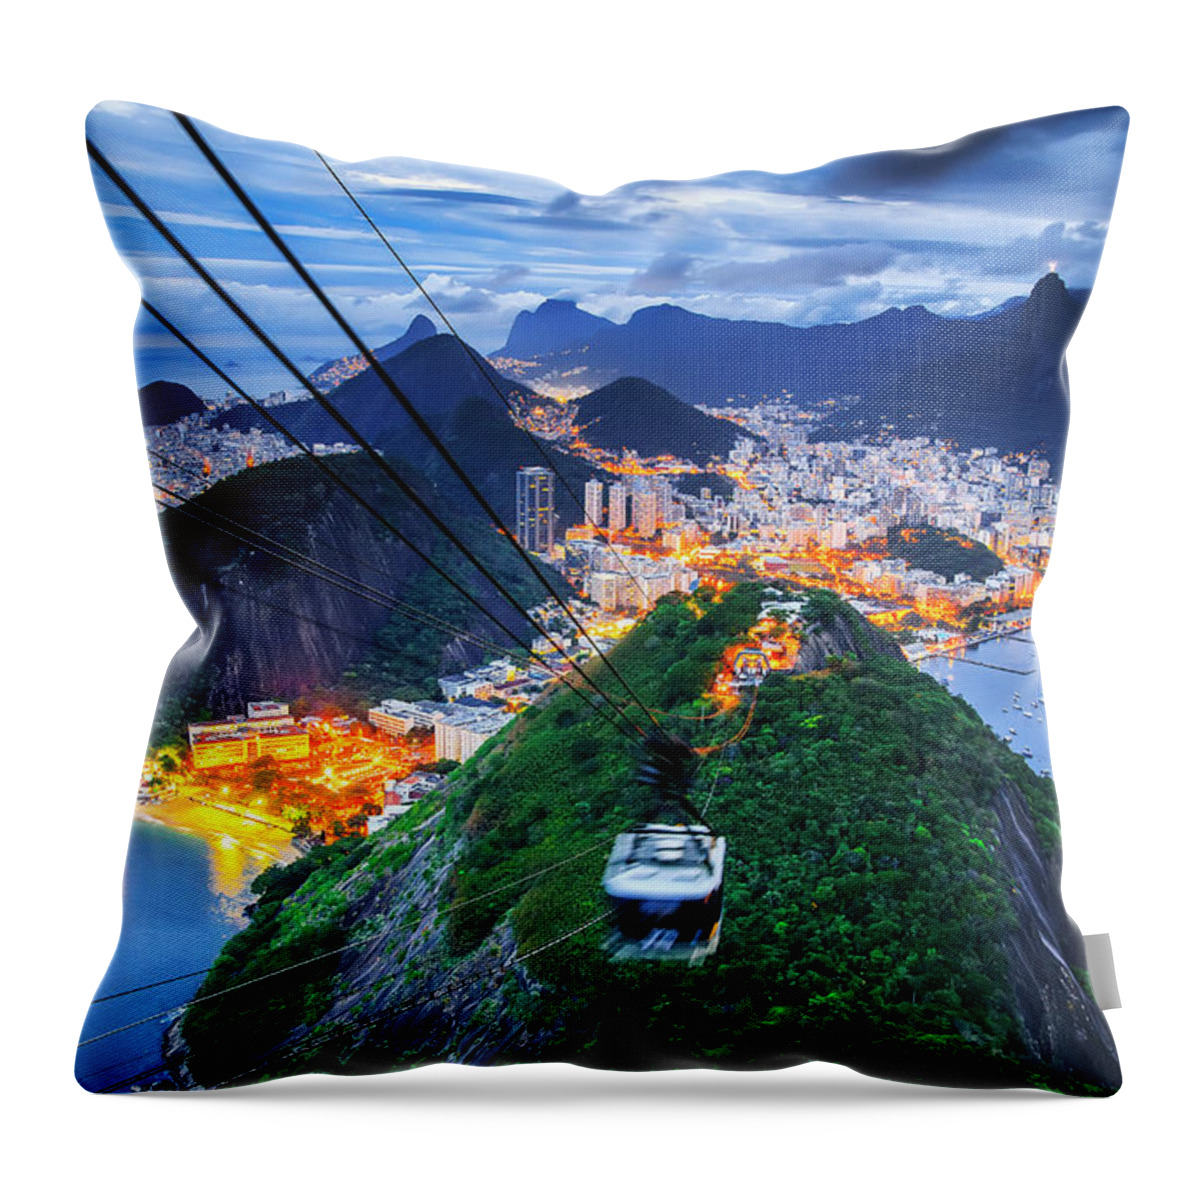 Estock Throw Pillow featuring the digital art Cityscape, Rio De Janeiro, Brazil by Antonino Bartuccio